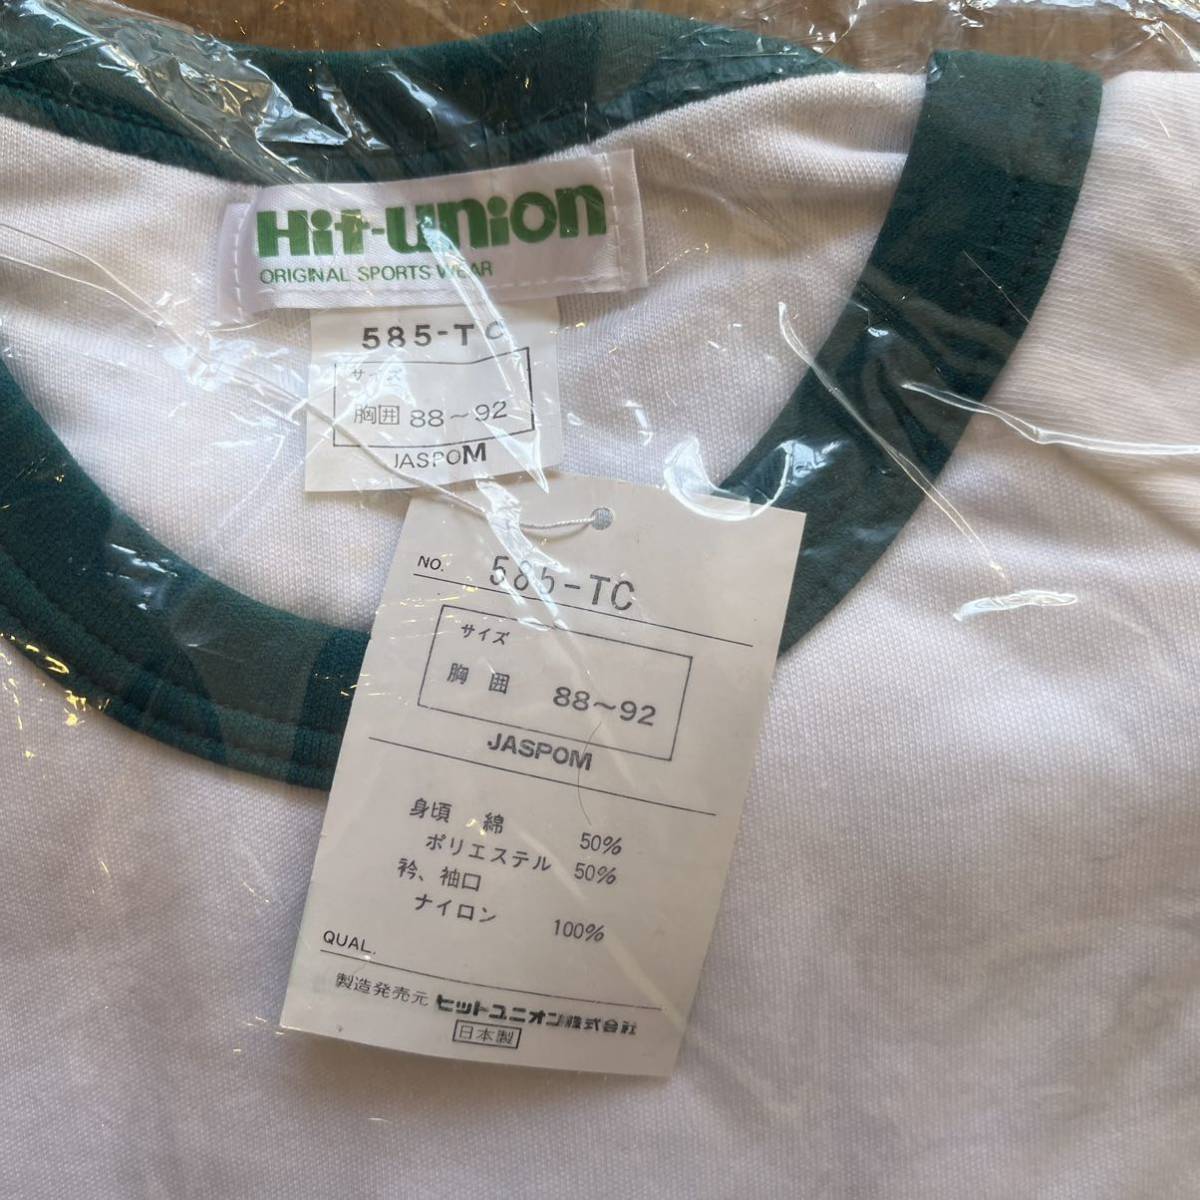 Hit Union ヒットユニオン hitunion 体操服 体操着 体育着 半袖シャツ シャツ 緑 Mサイズ_画像3